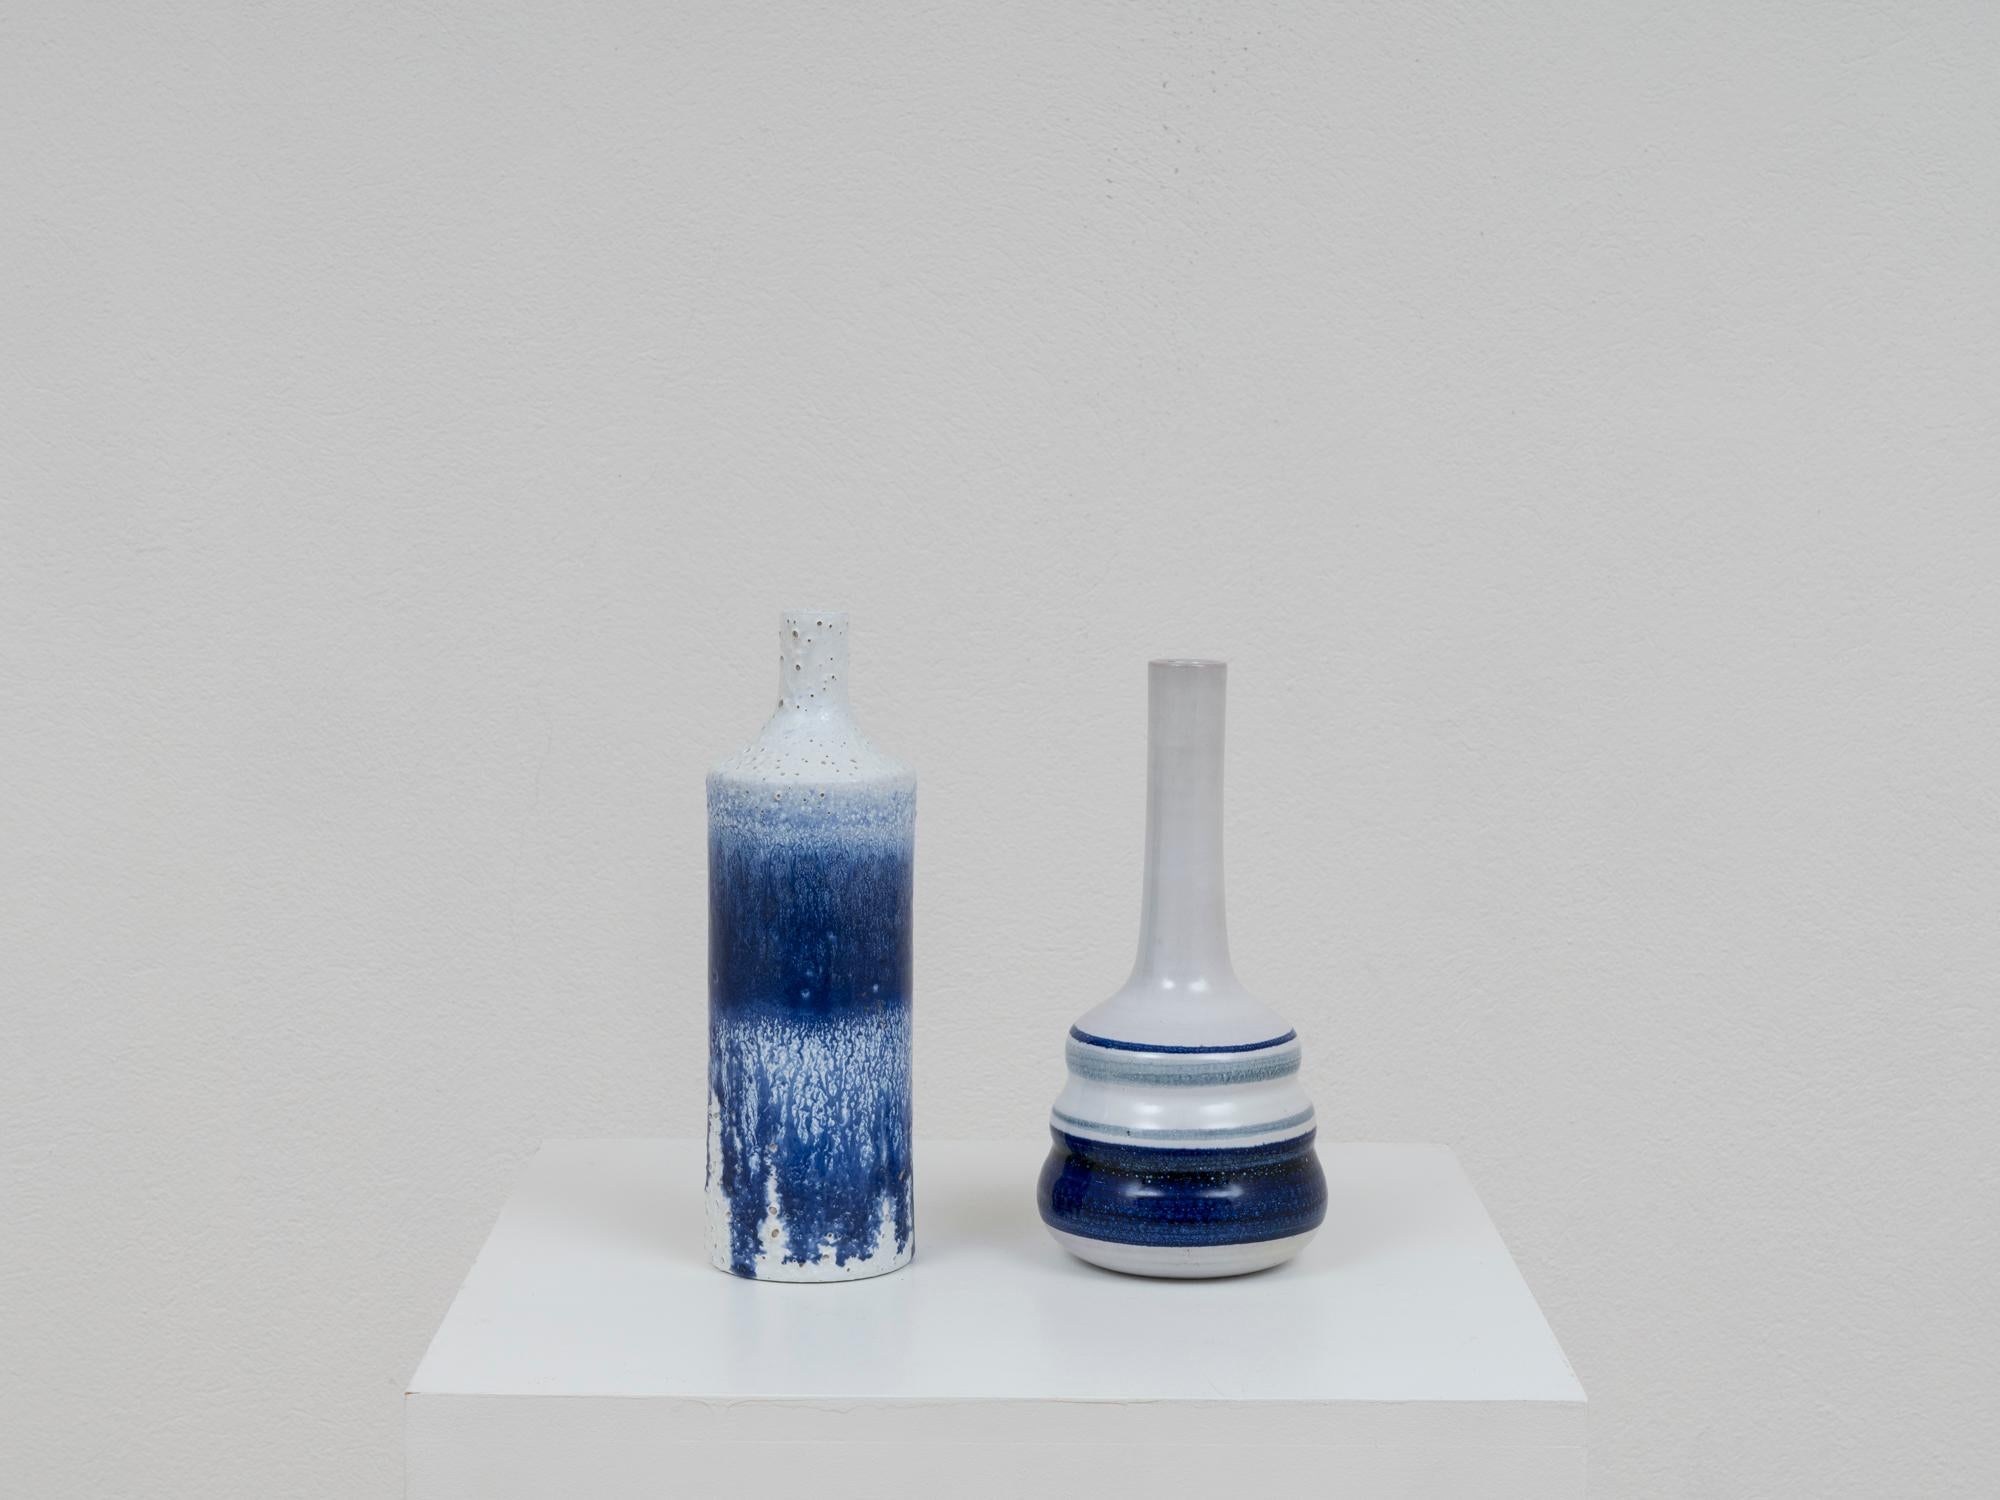 Paire de vases bouteilles en céramique de Pino Castagna, au décor bleu et blanc à forte connotation méditerranéenne. Dégoulinades d'émail et finitions tactiles sur une bouteille. Cette pièce a été fabriquée dans le laboratoire de l'artiste à